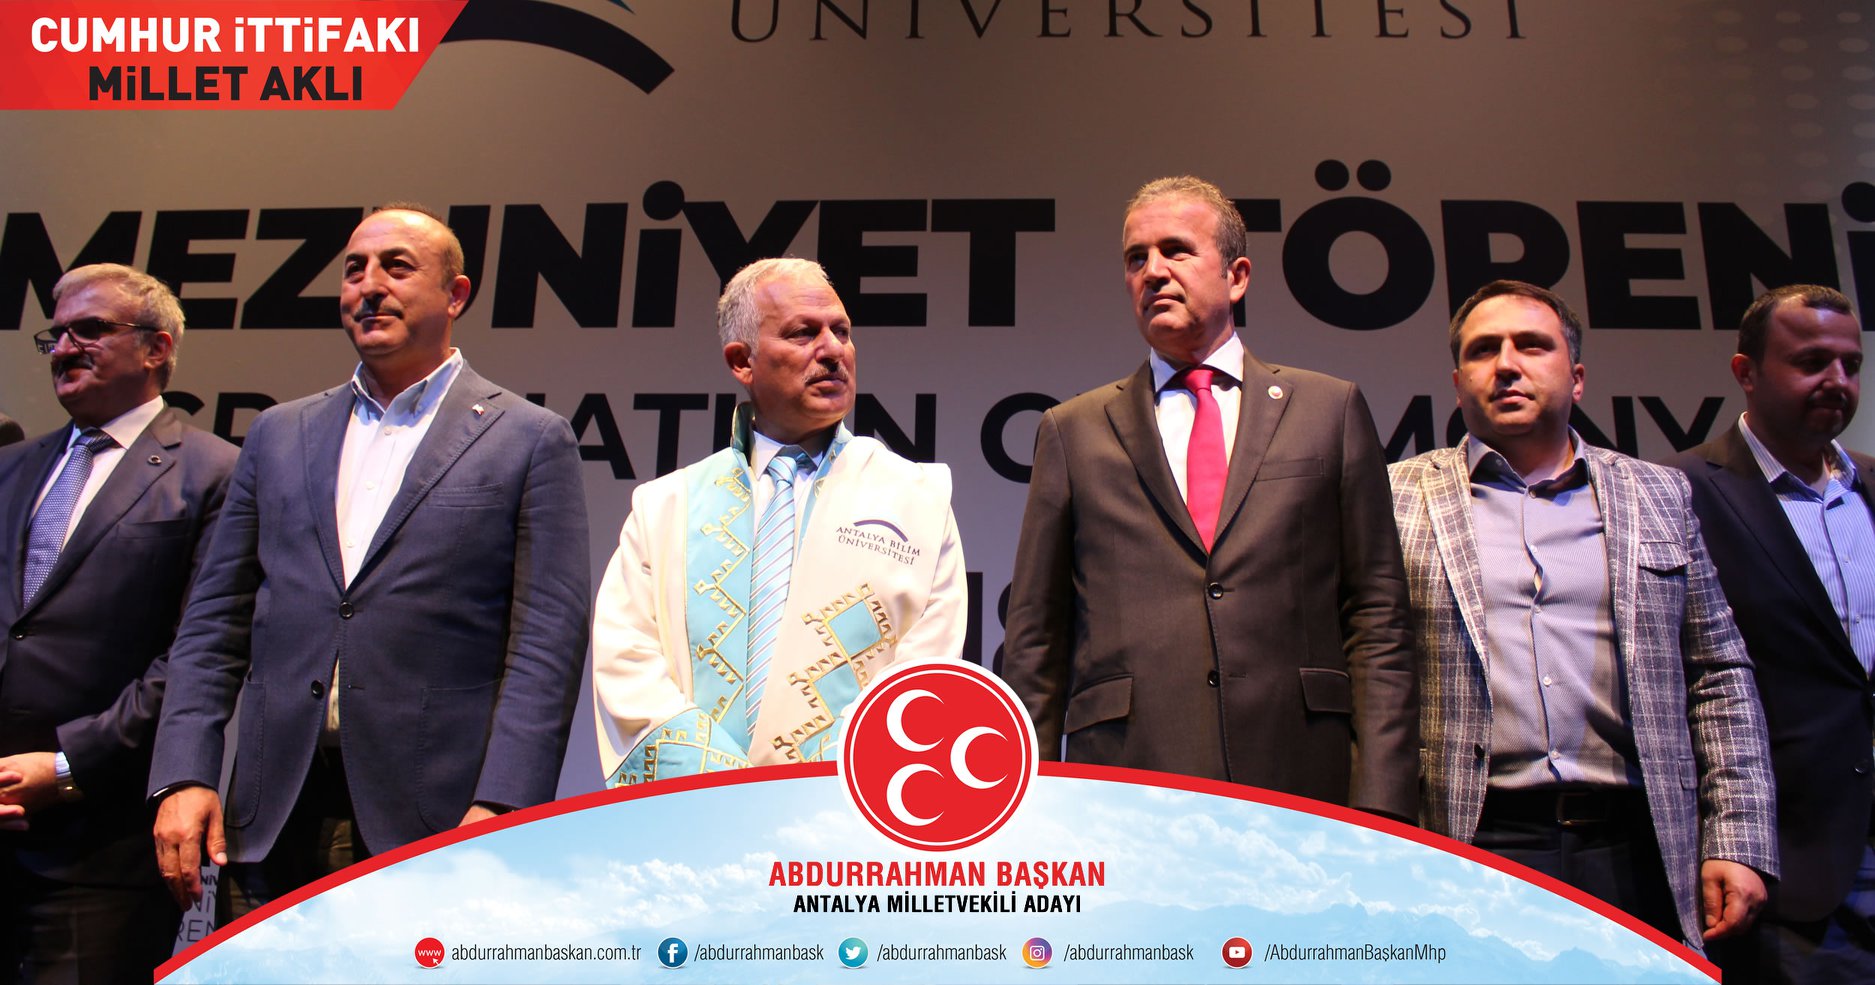 Antalya Bilim Üniversitesi Mezuniyet törenindeyiz. Gençlerimizin #Cumhurİttifakı